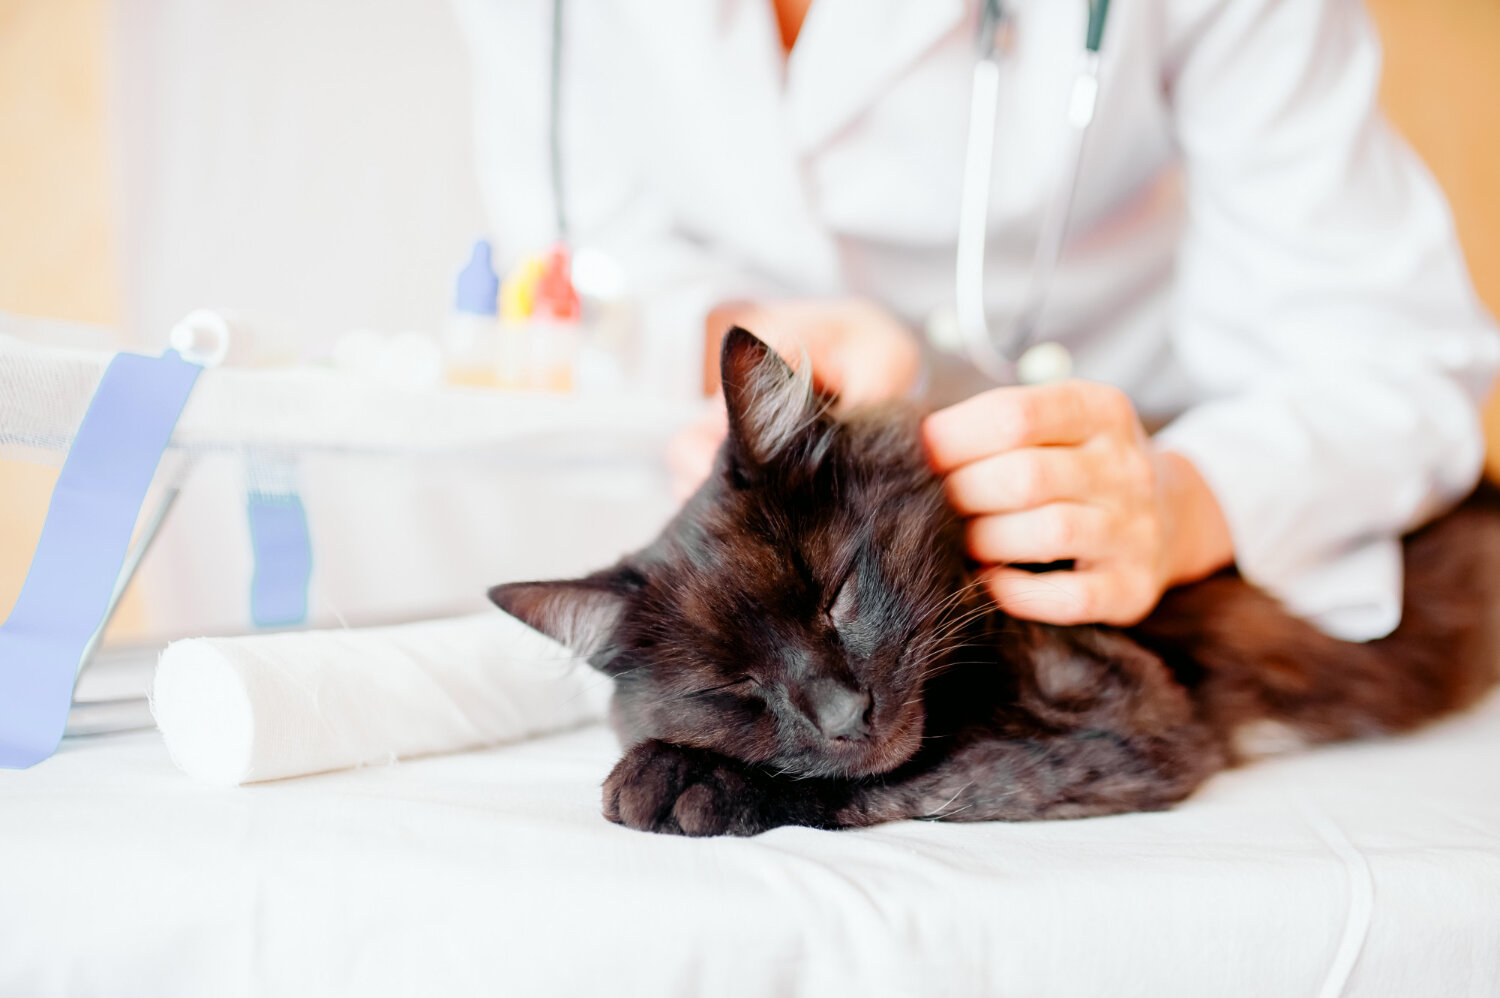 veteriner hekim tarafından kontrol edilen siyah tüylü kedi